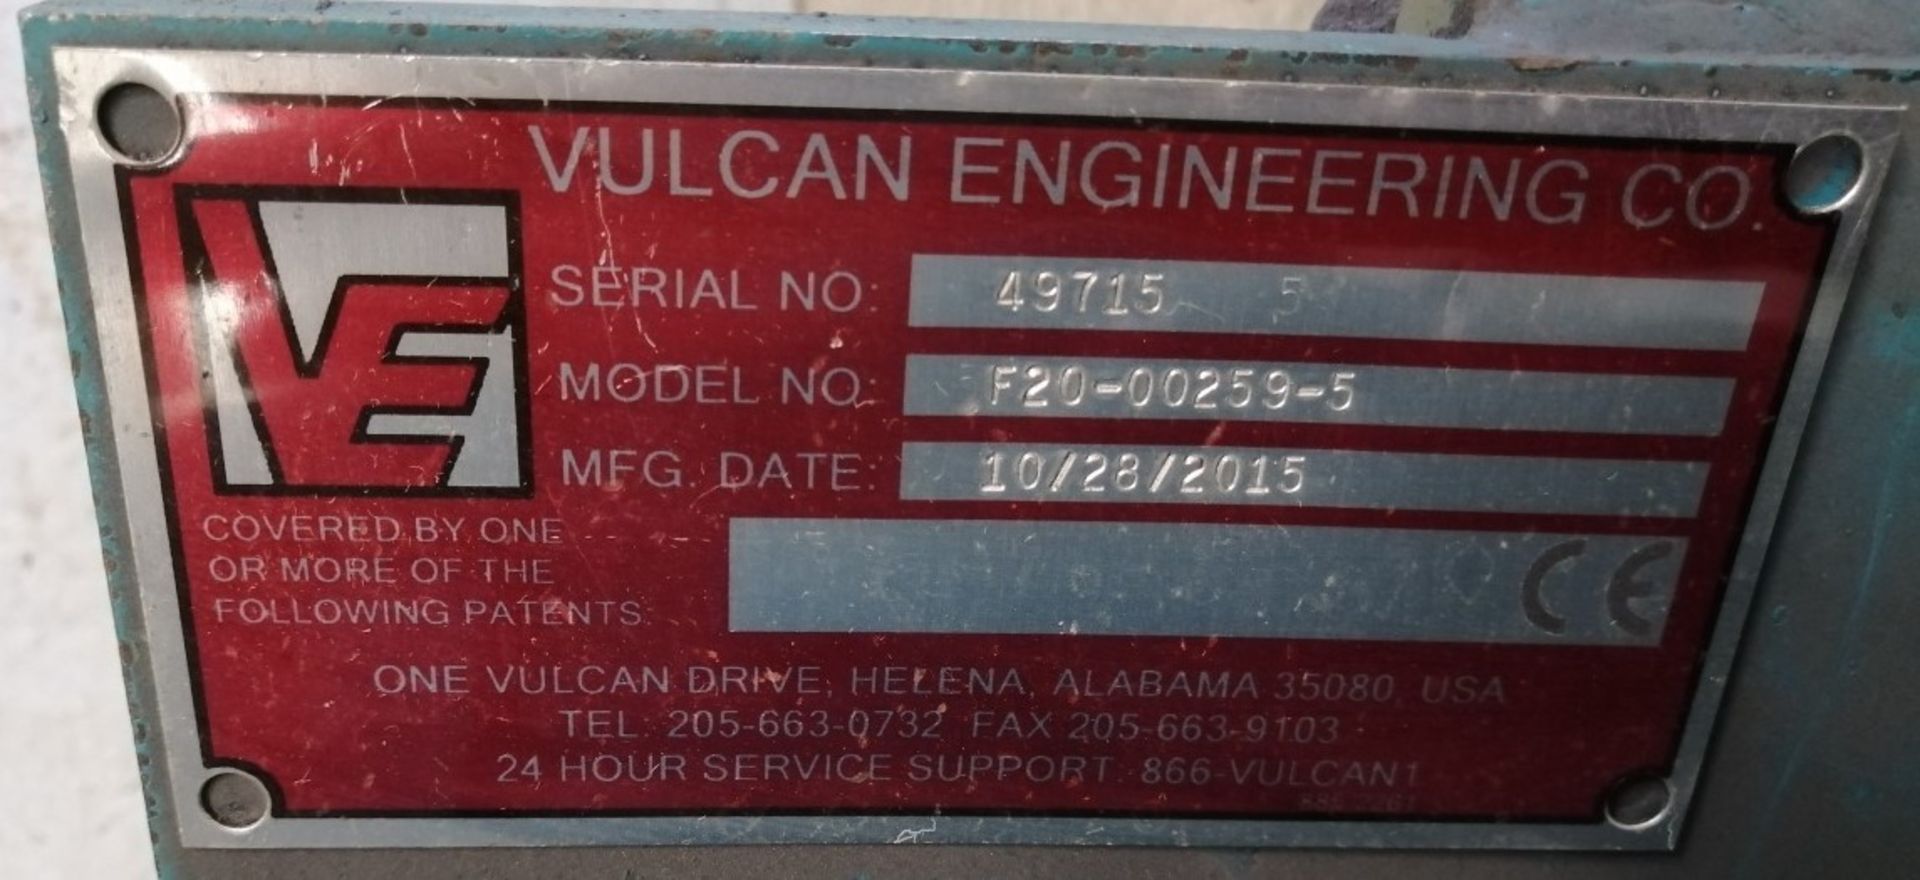 Vulcan Engneering Swing Frame Grinder - Image 5 of 6